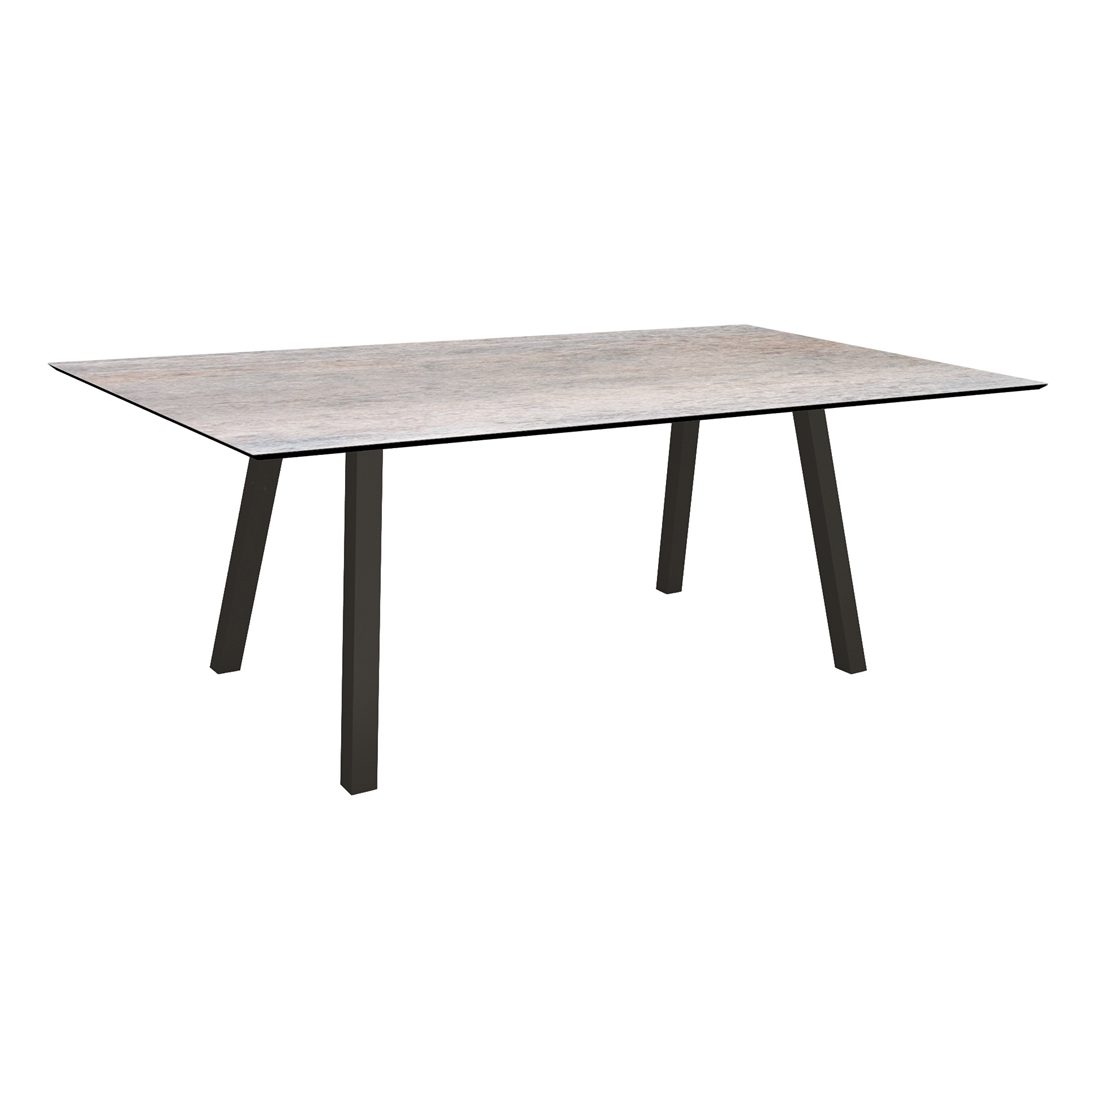 Stern Tisch "Interno", Größe 180x100cm, Alu schwarz matt, Vierkantrohr, Tischplatte HPL Smoky